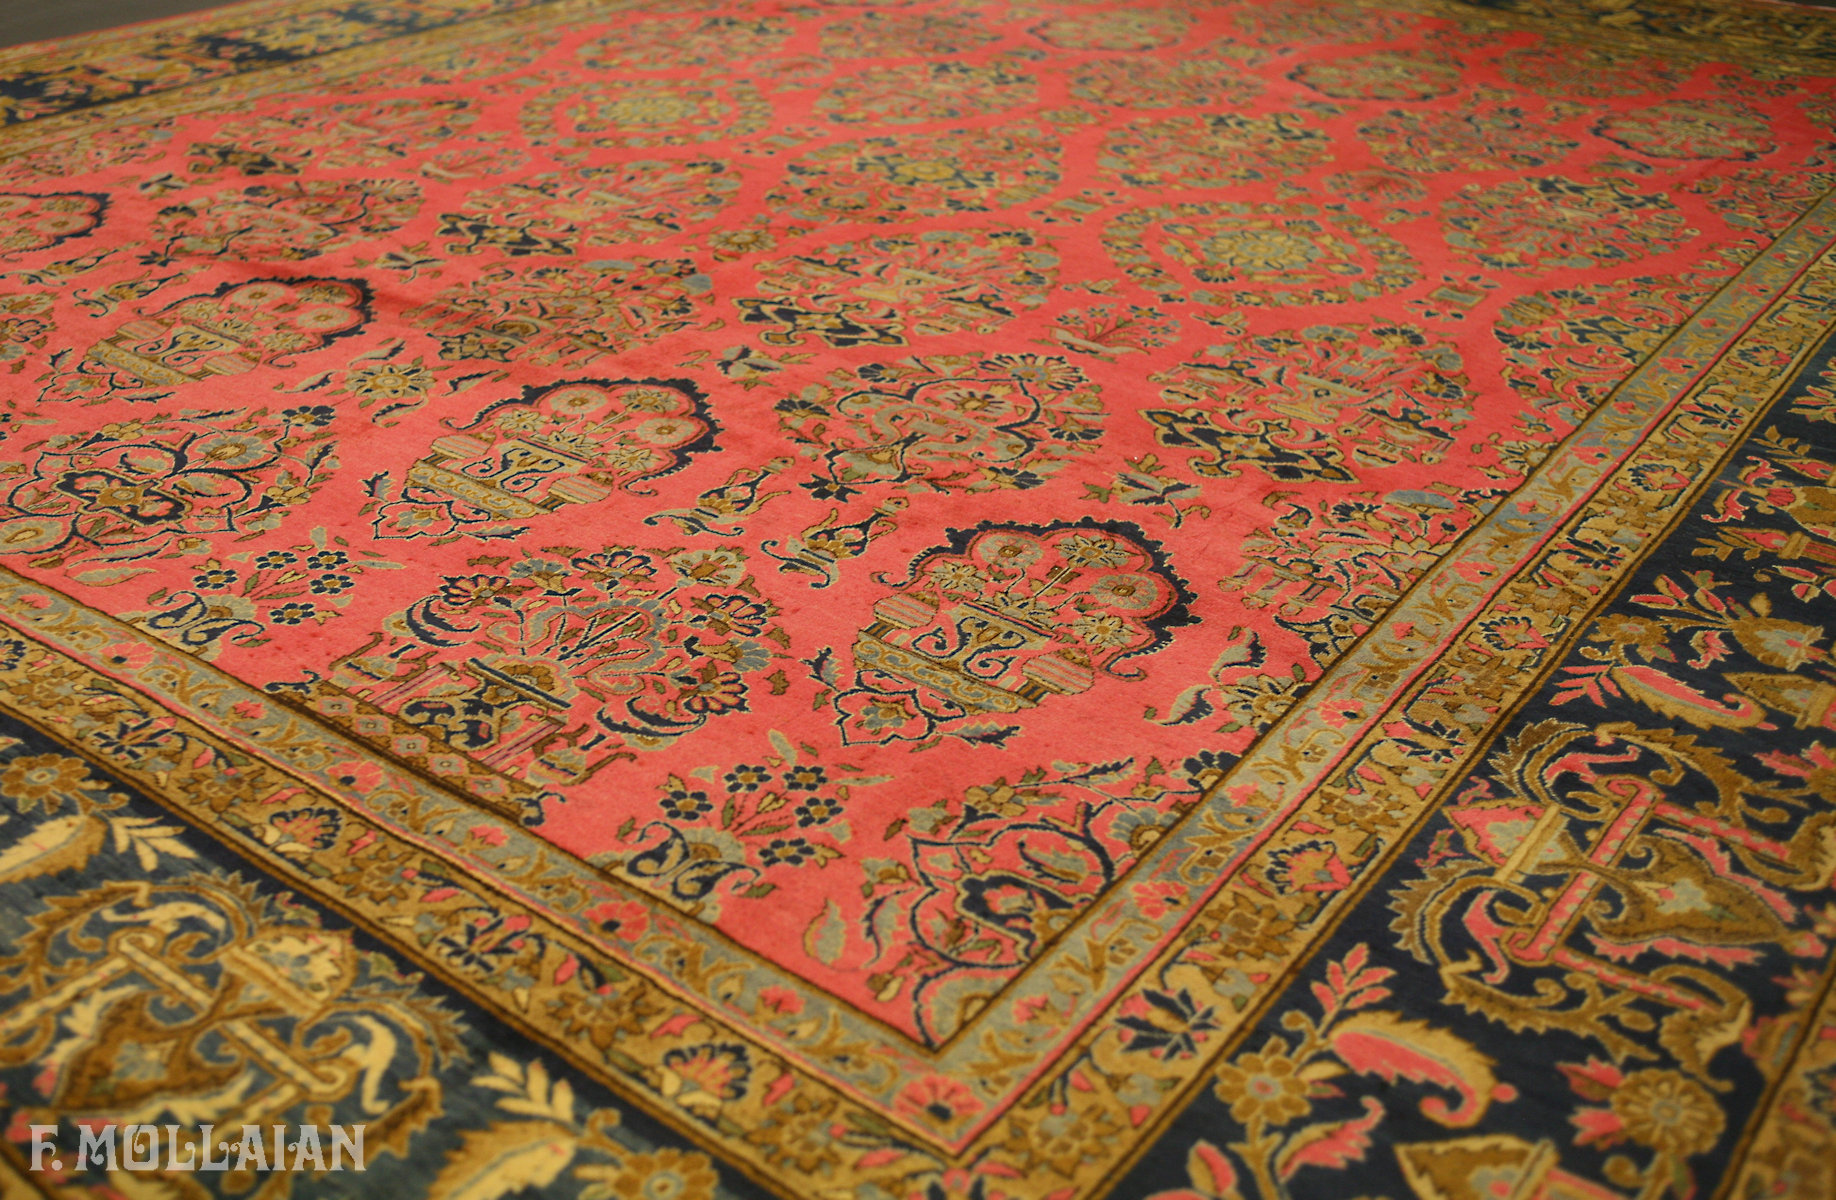 Antique Persian Kashan Kurk Carpet n°:71494298